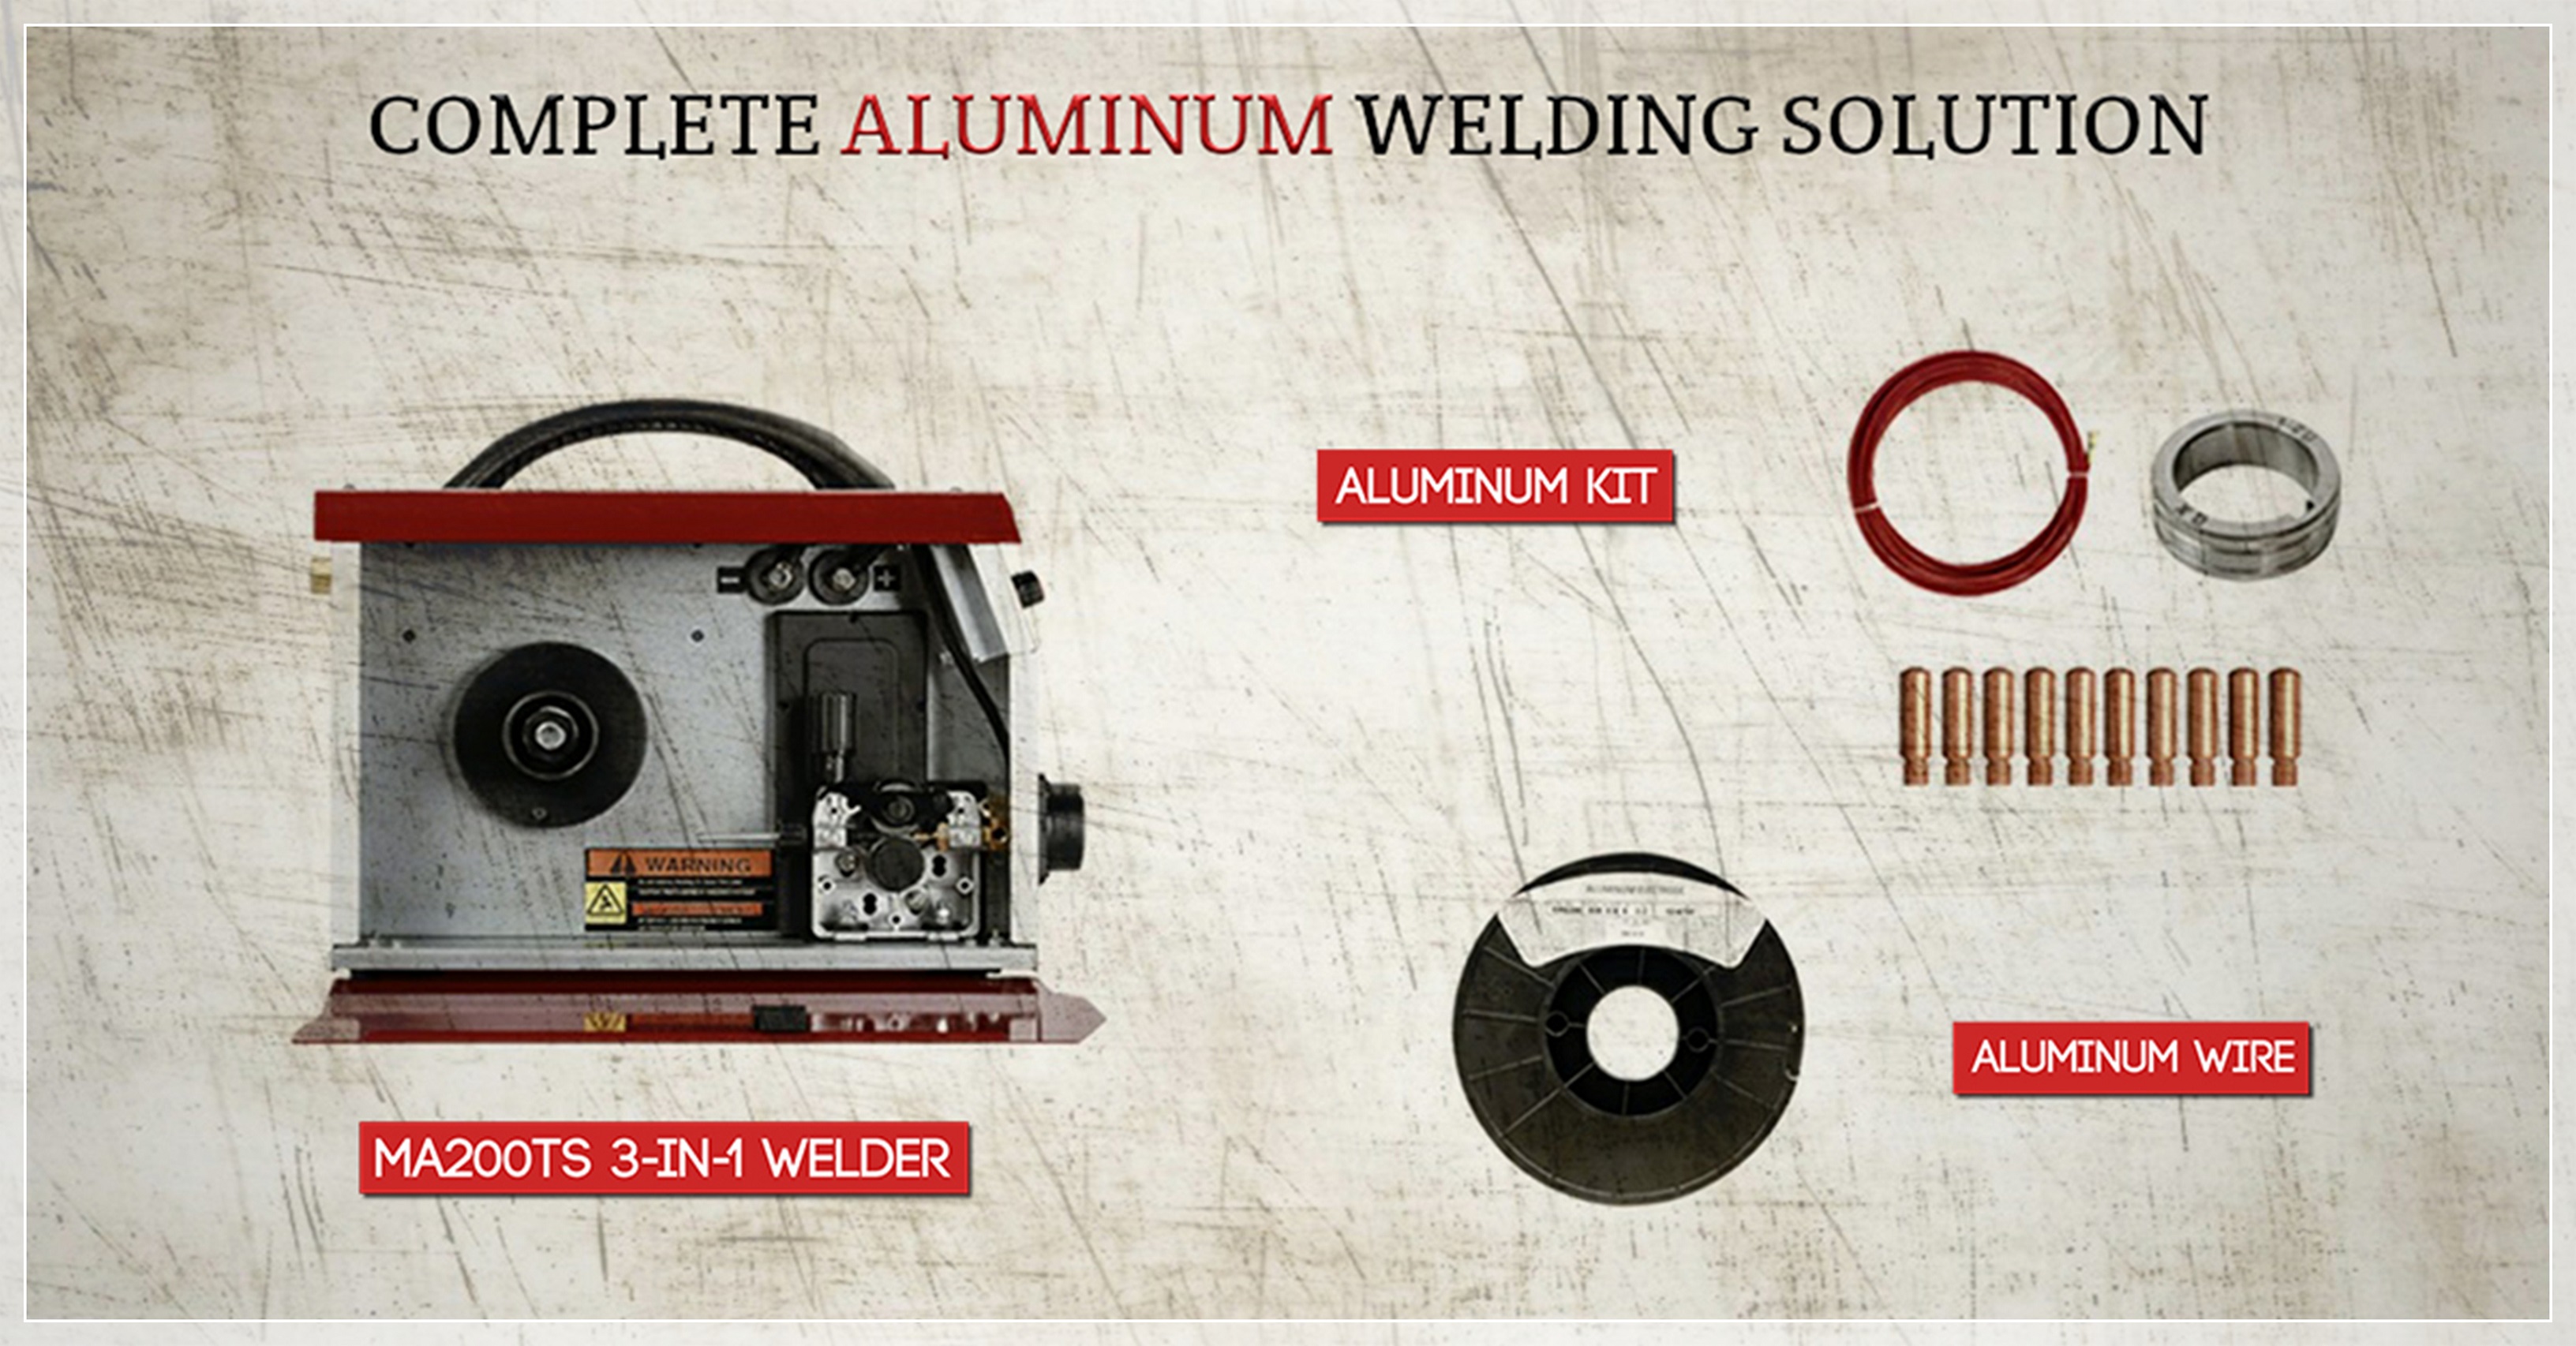 Aluminum welding kit